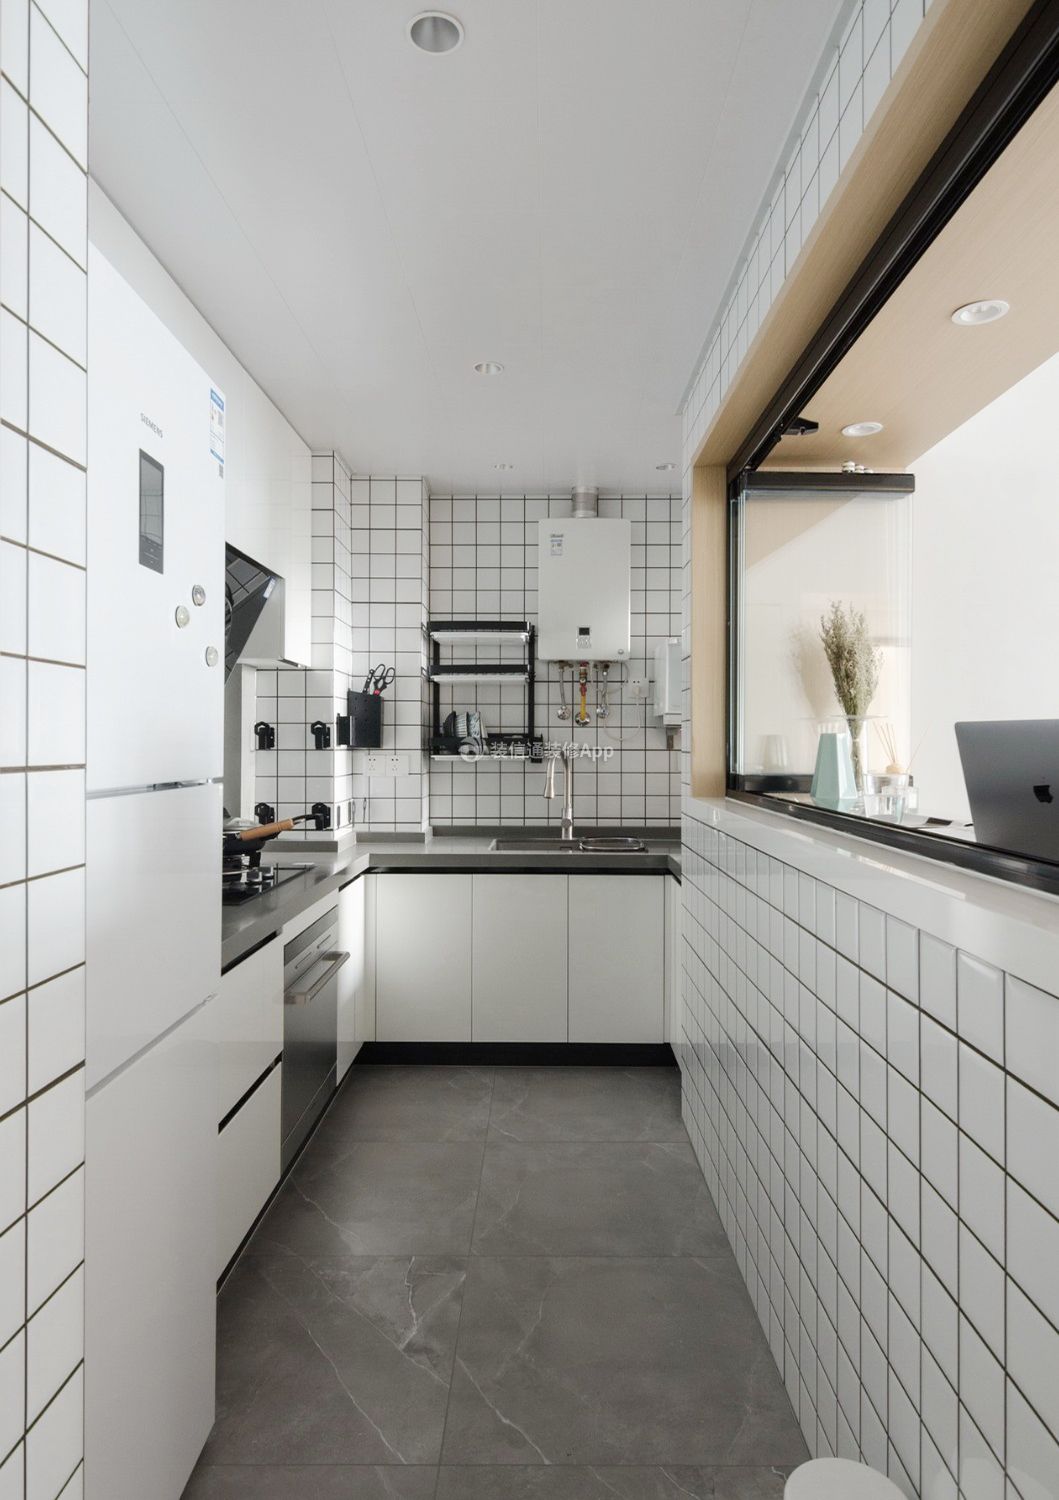 90平方房屋厨房马赛克瓷砖装修效果图